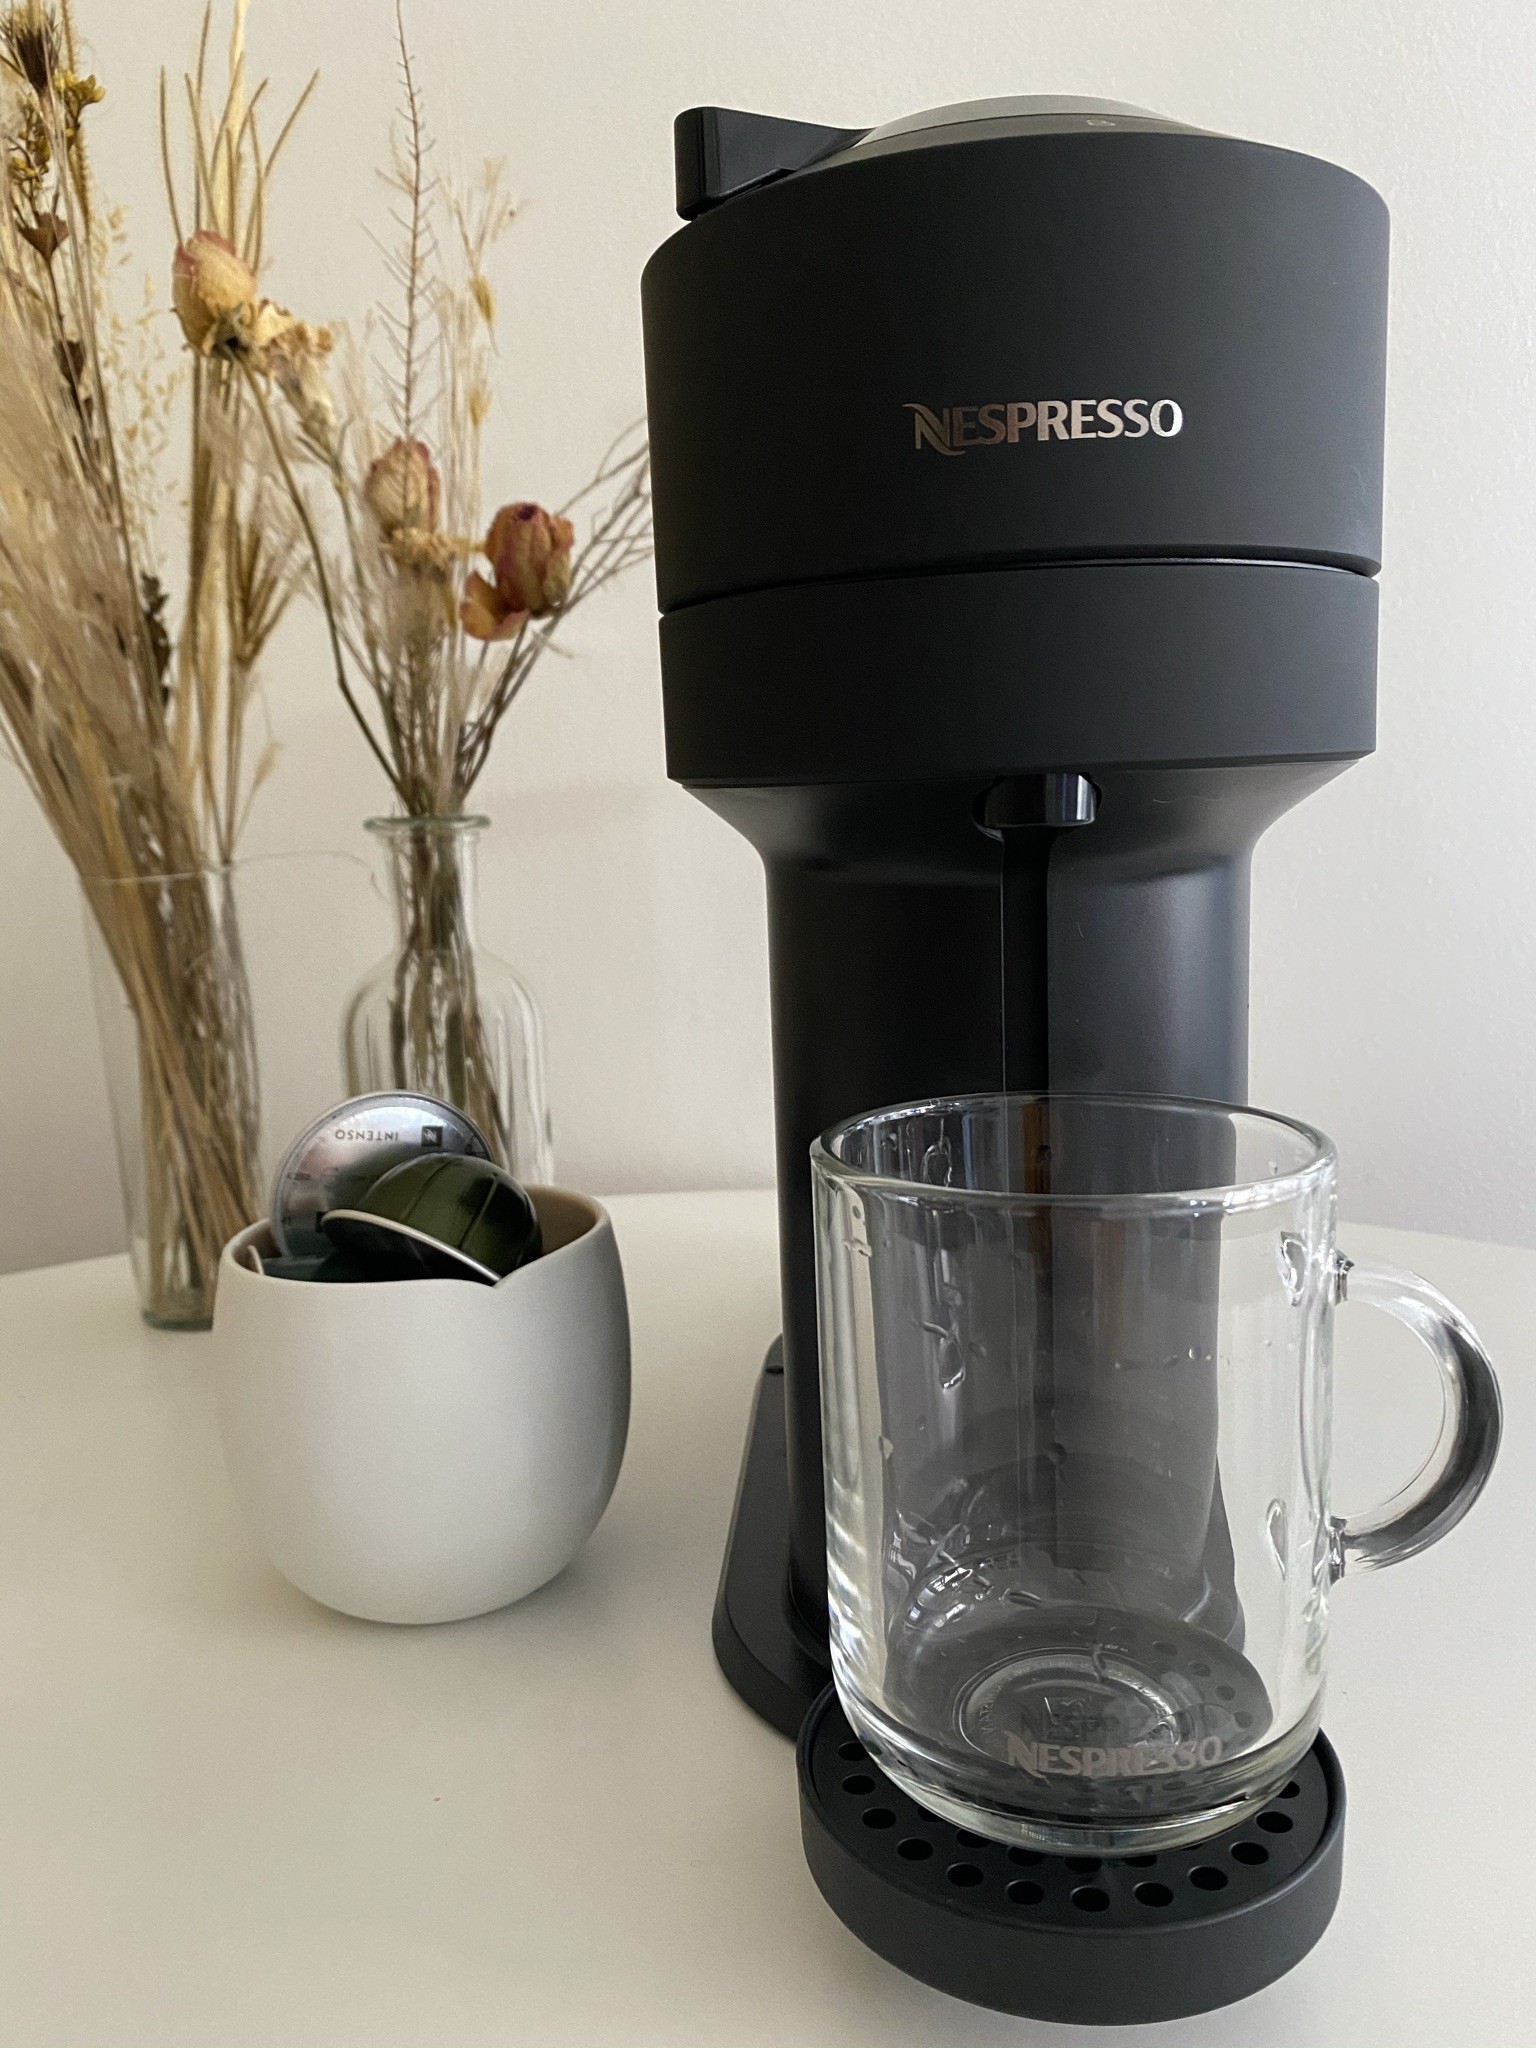 Testamos a nova Nespresso Vertuo Next. Confira o review completo (Foto: Julyana Oliveira)